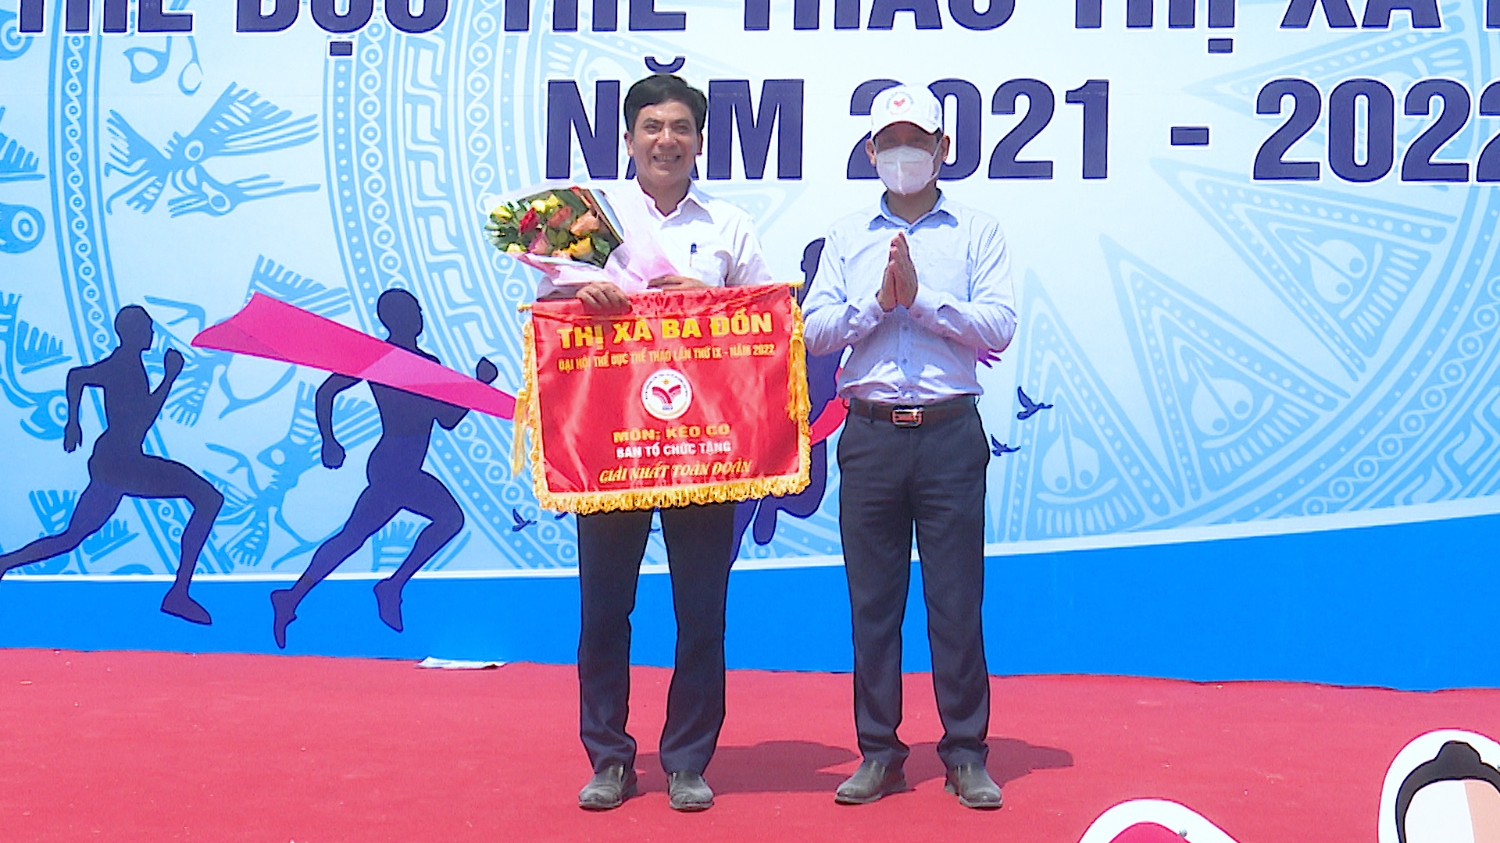 Đồng chí Nguyễn Văn Tình, Thị ủy viên, PCT UBND thị xã trao giải nhất toàn đoàn kéo co cho phường Quảng Long